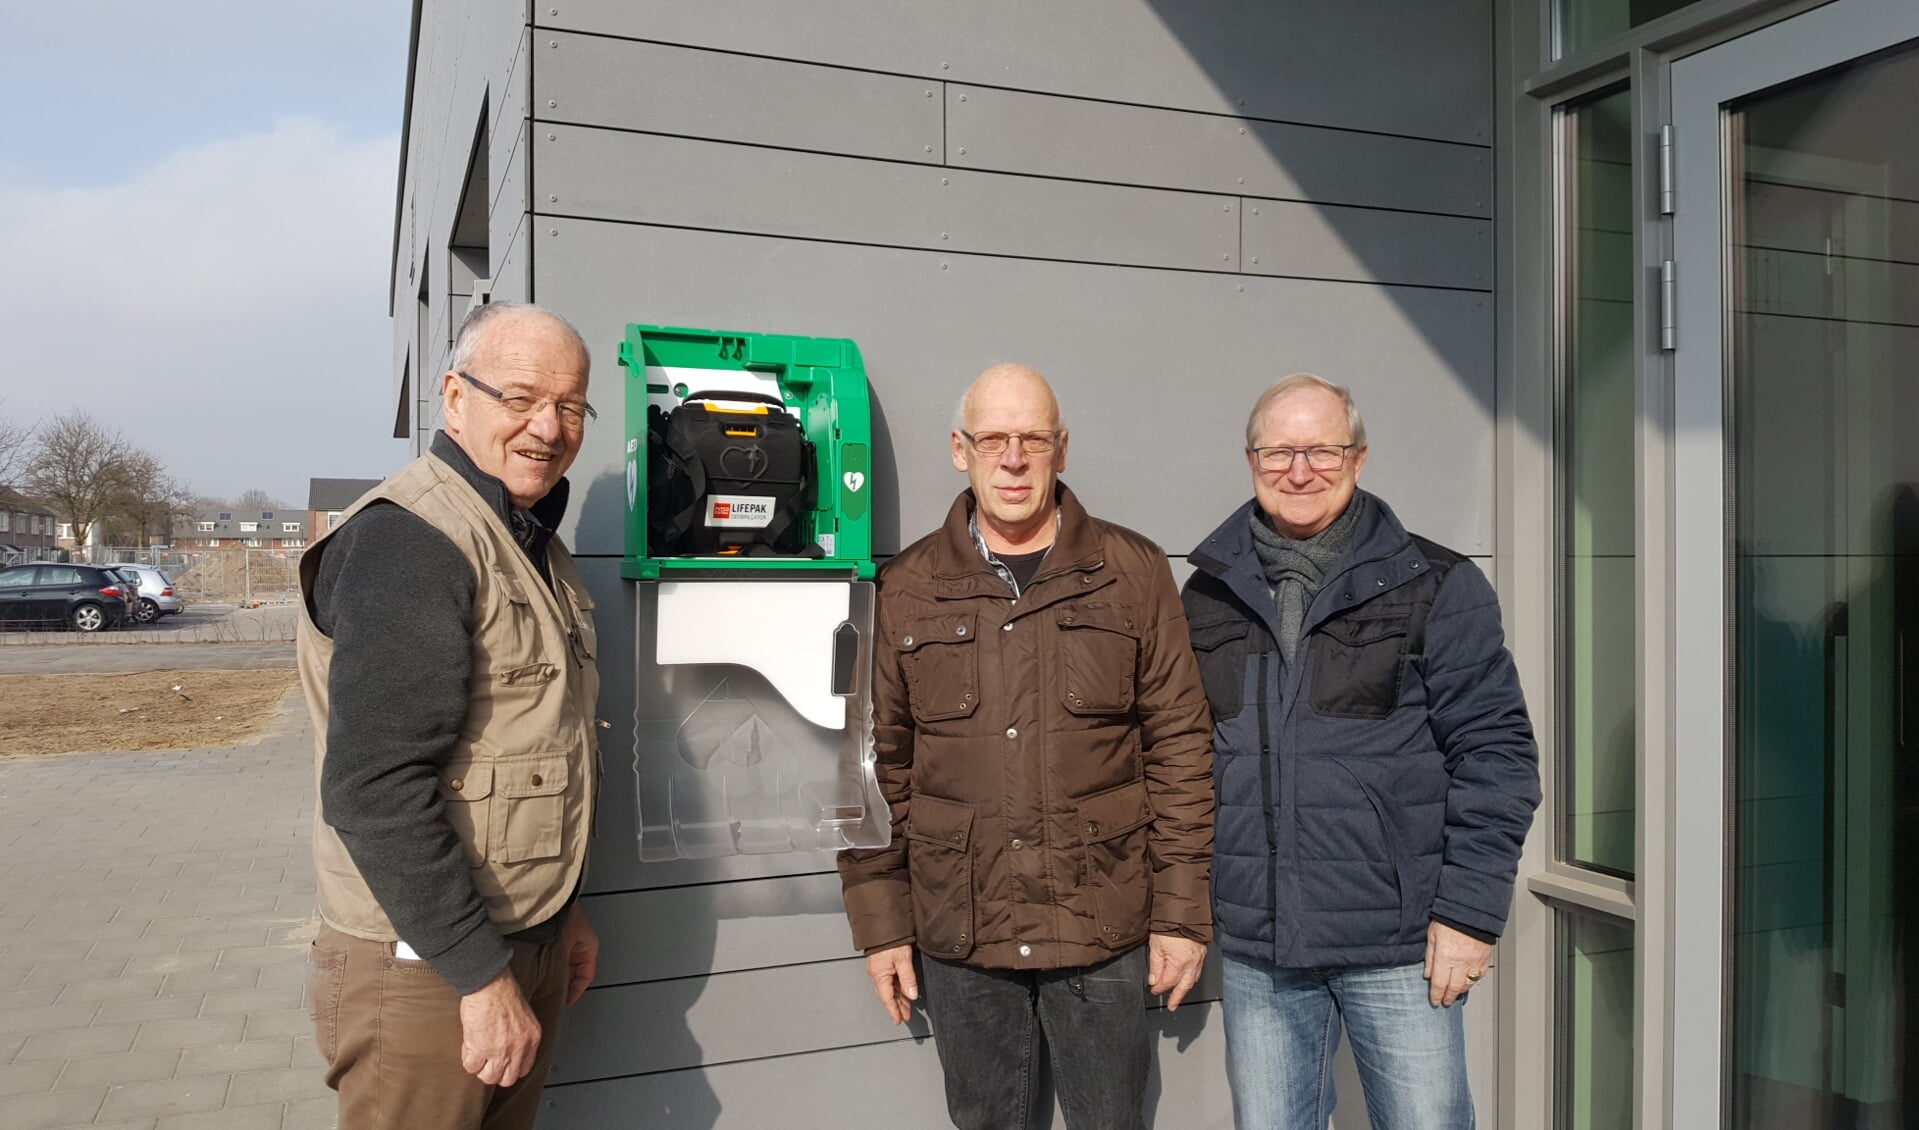 Peter de Wit van de Wijkvereniging (midden), John Zijlmans van de Wijkraad (rechts) en Leo Engelen van VHS (links).